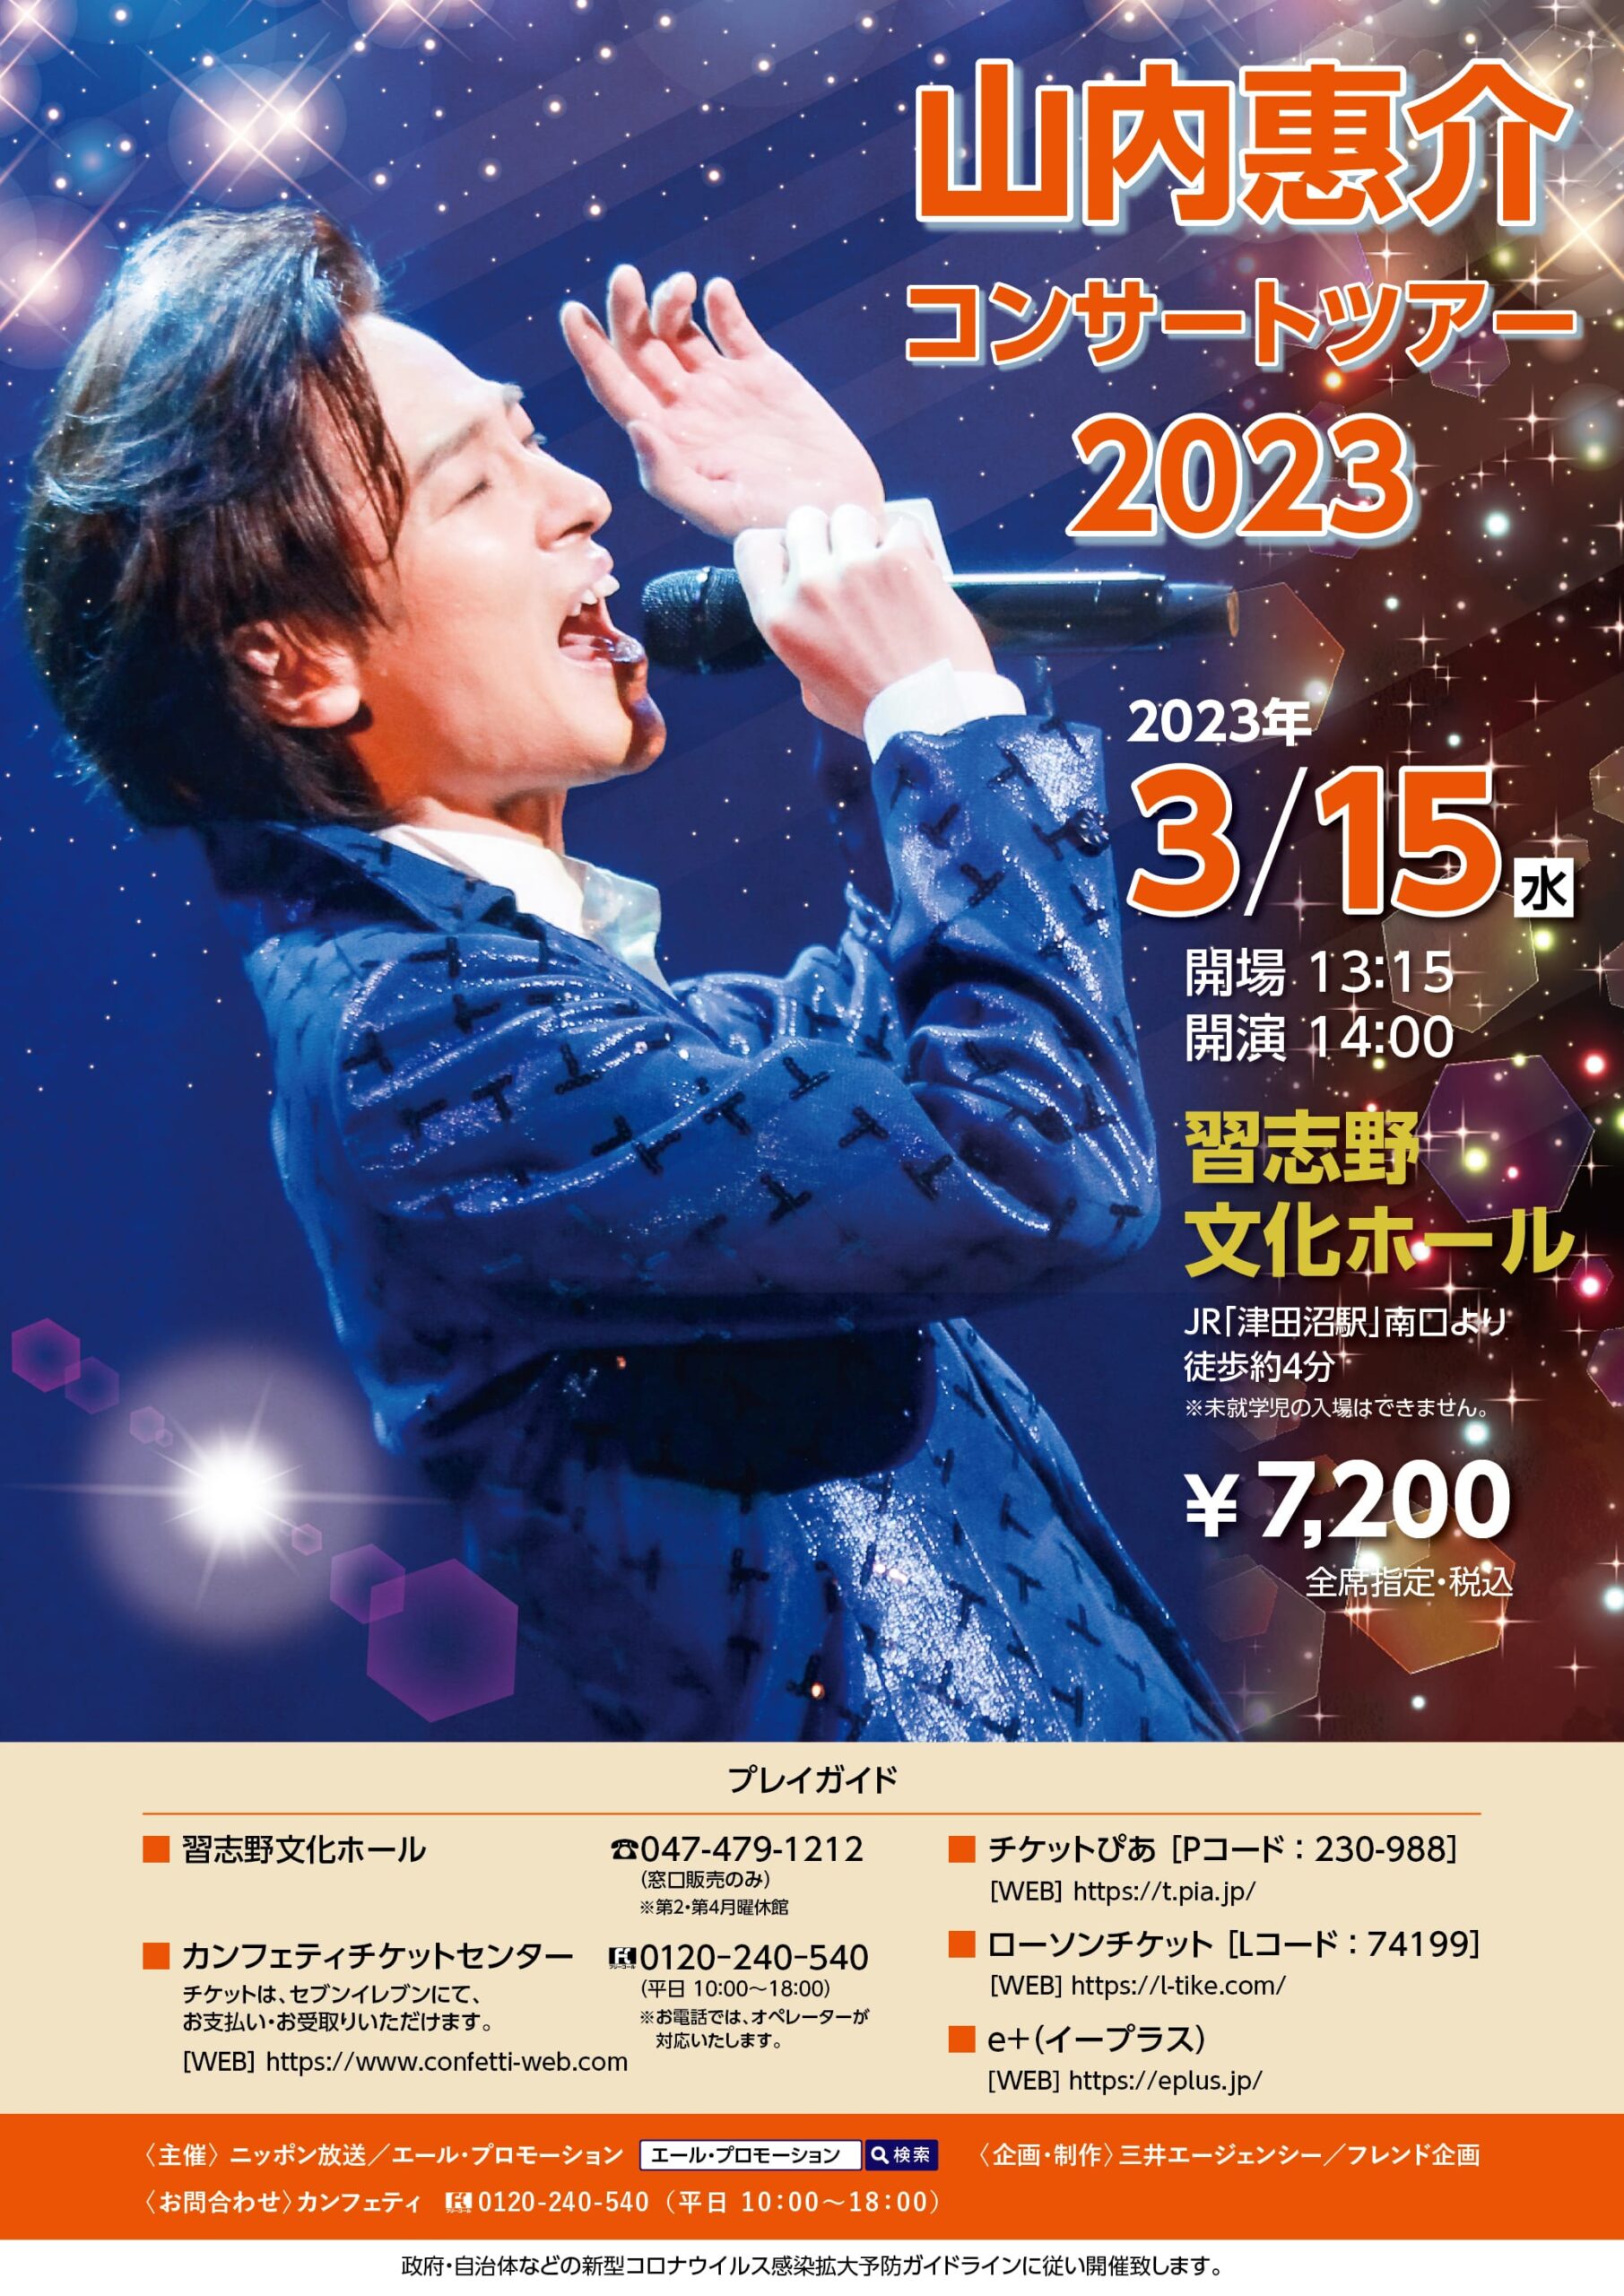 山内惠介 コンサートツアー2023 | エール・プロモーション